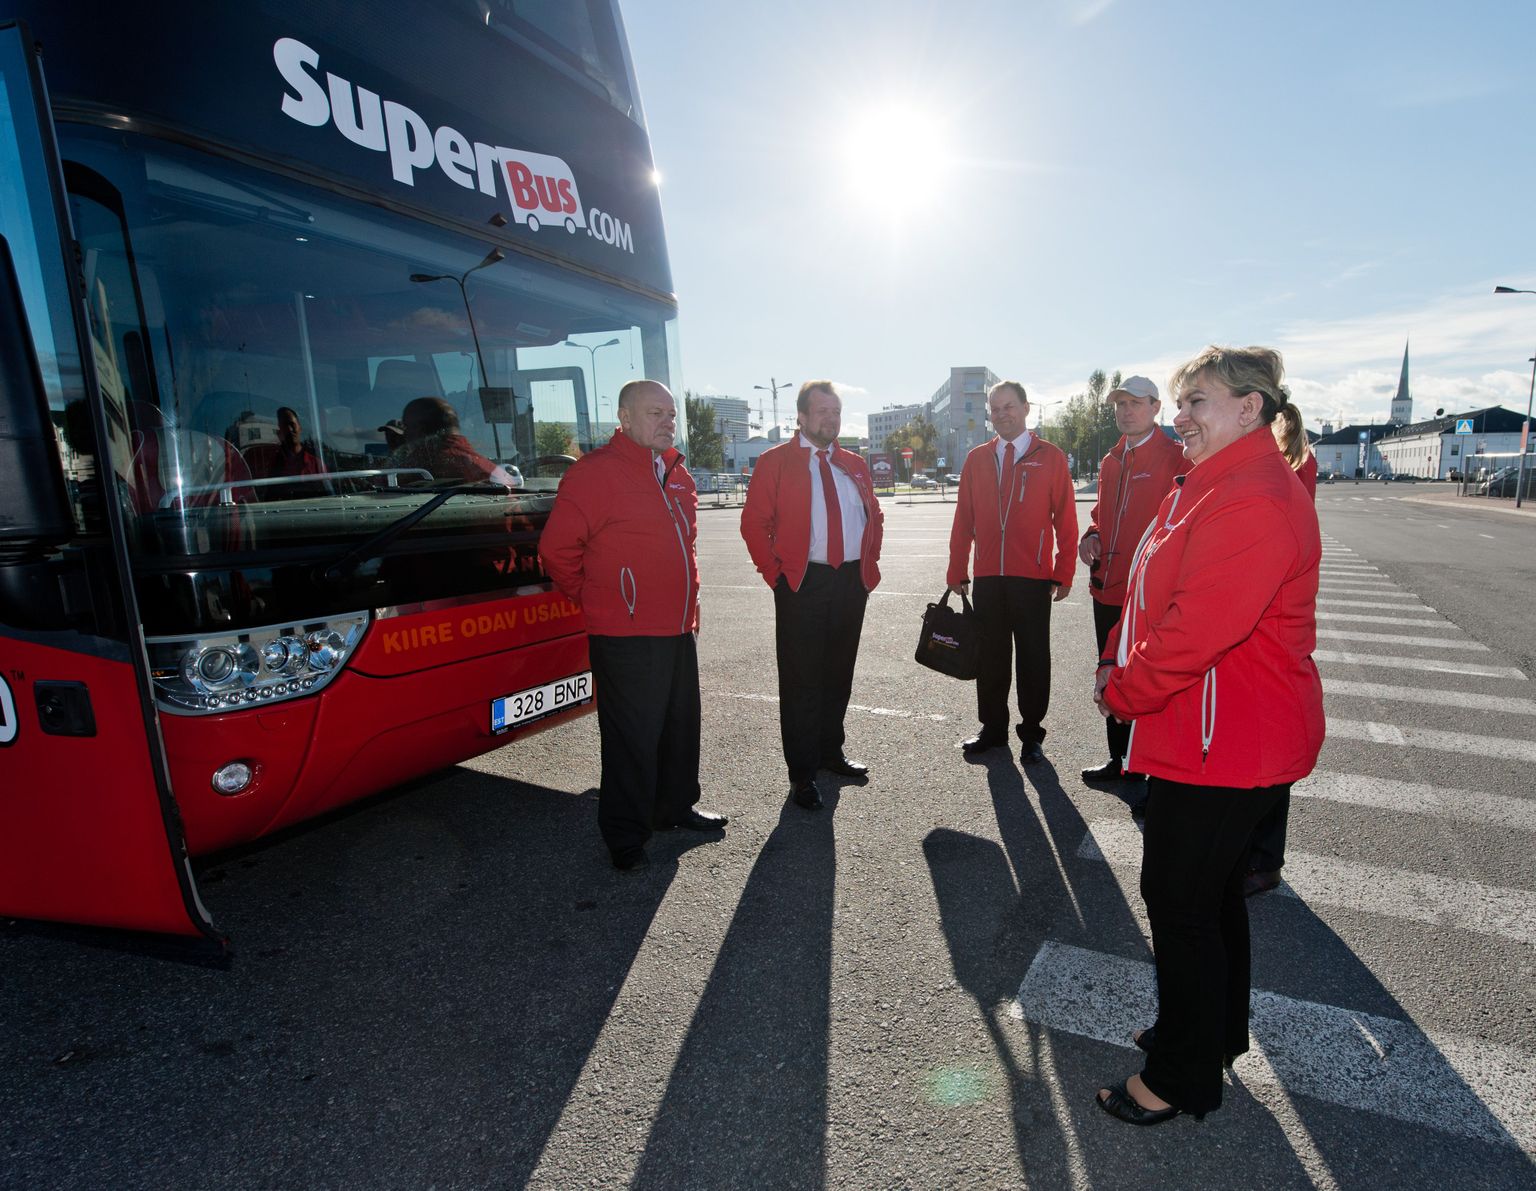 Обслуживающий персонал Superbus теряет работу лишь недавно ее устроившись в новую компанию.